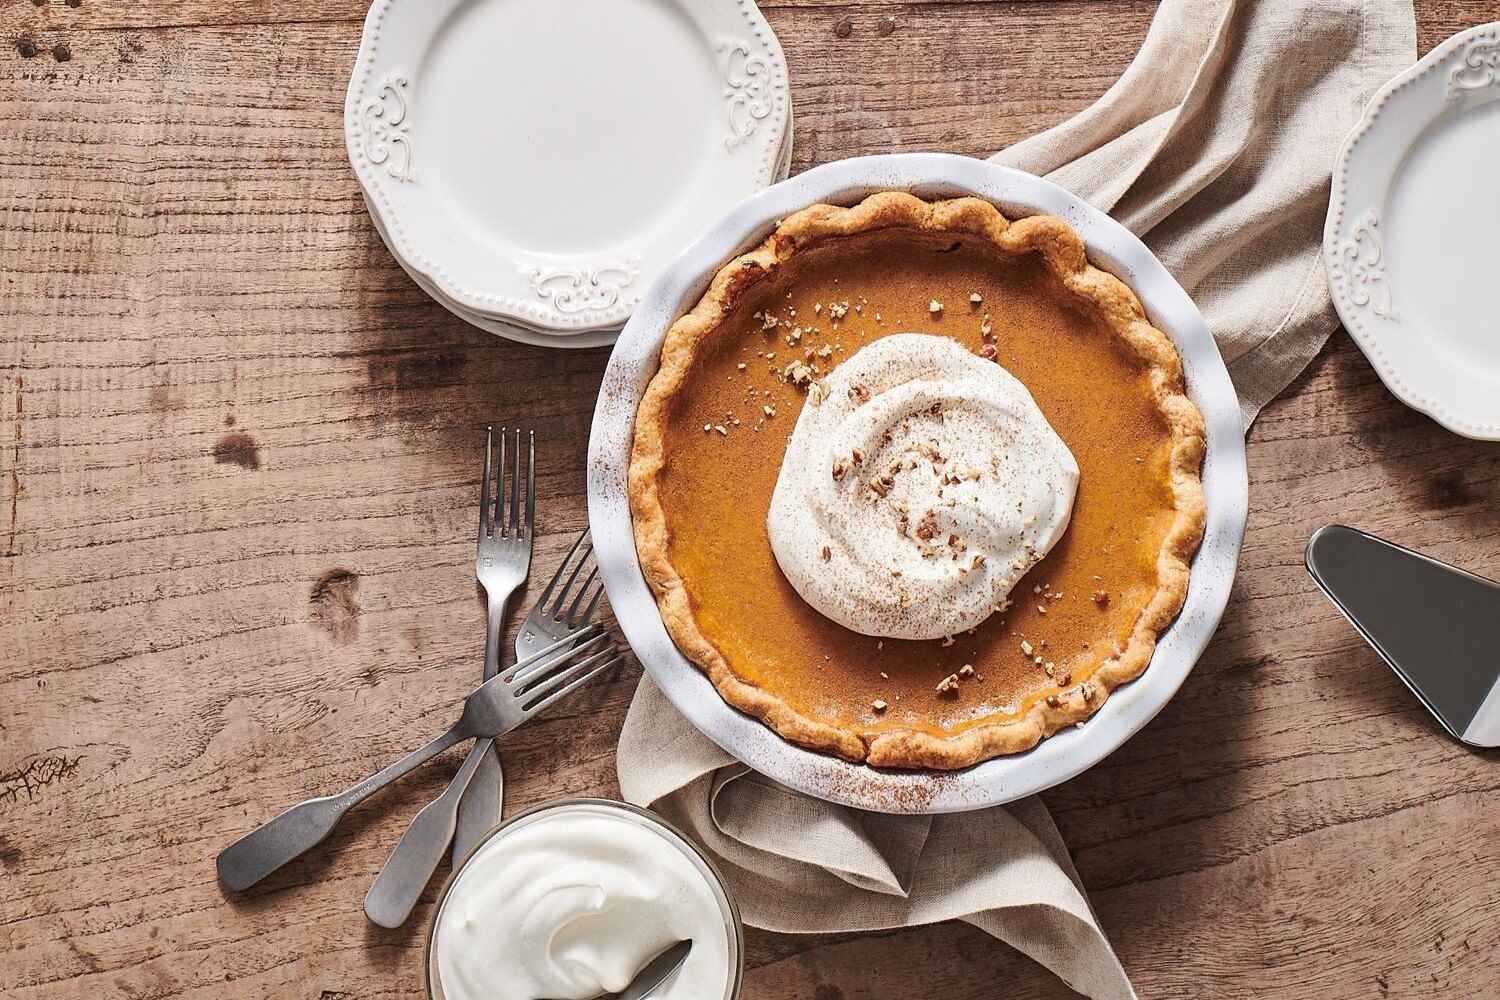 pie recipes for thanksgiving, pumpkin butter pie